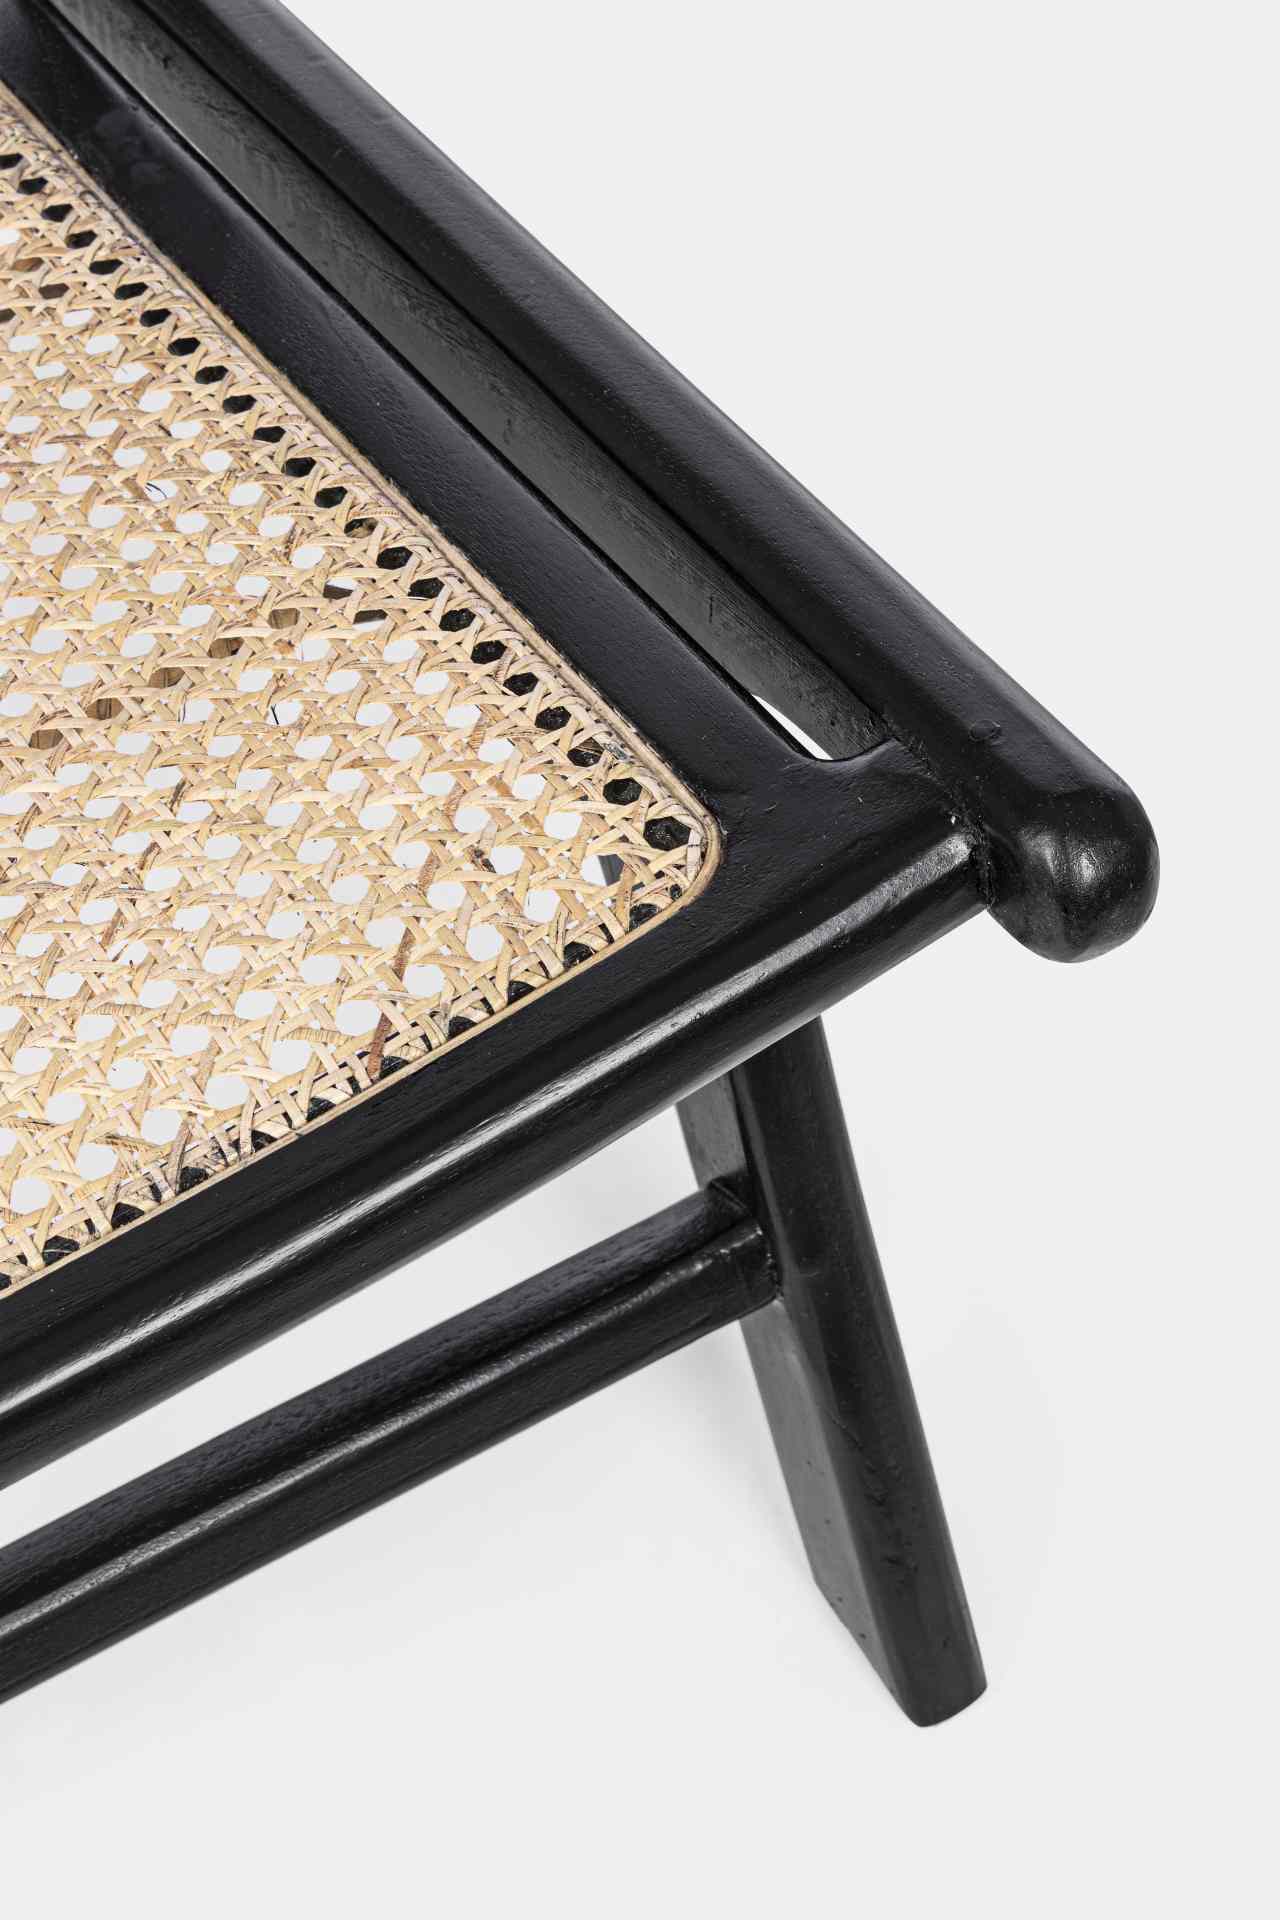 Der Sessel Mabel überzeugt mit seinem klassischen Design. Gefertigt wurde er aus Rattan, welcher einen natürlichen Farbton besitzt. Das Gestell ist aus Kautschukholz und hat eine schwarze Farbe. Der Sessel besitzt eine Sitzhöhe von 41 cm. Die Breite beträ